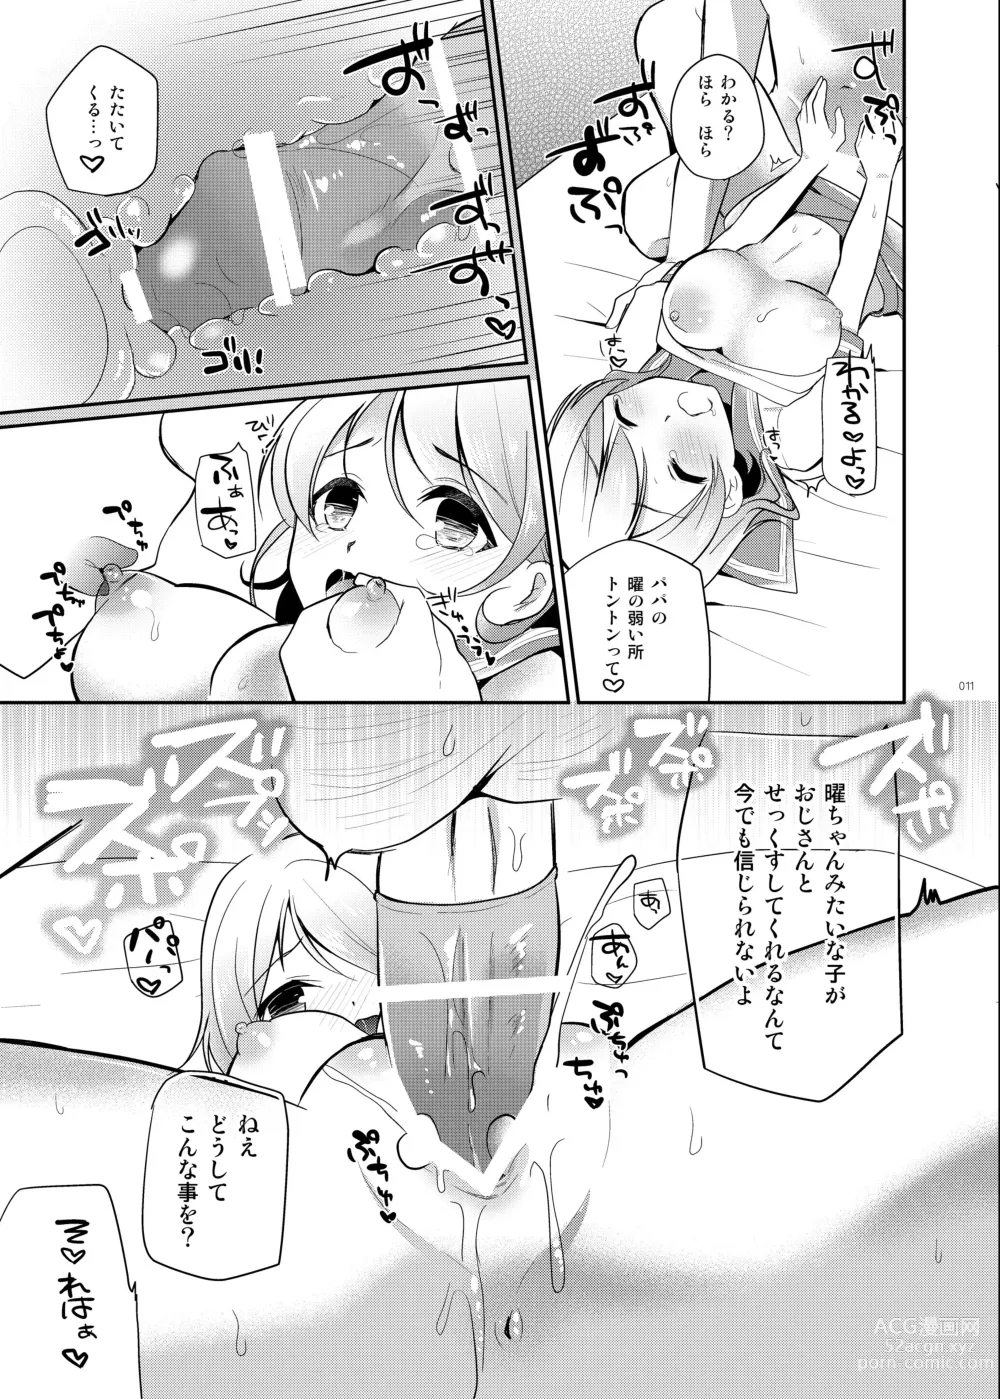 Page 10 of doujinshi You-chan no Himitsu